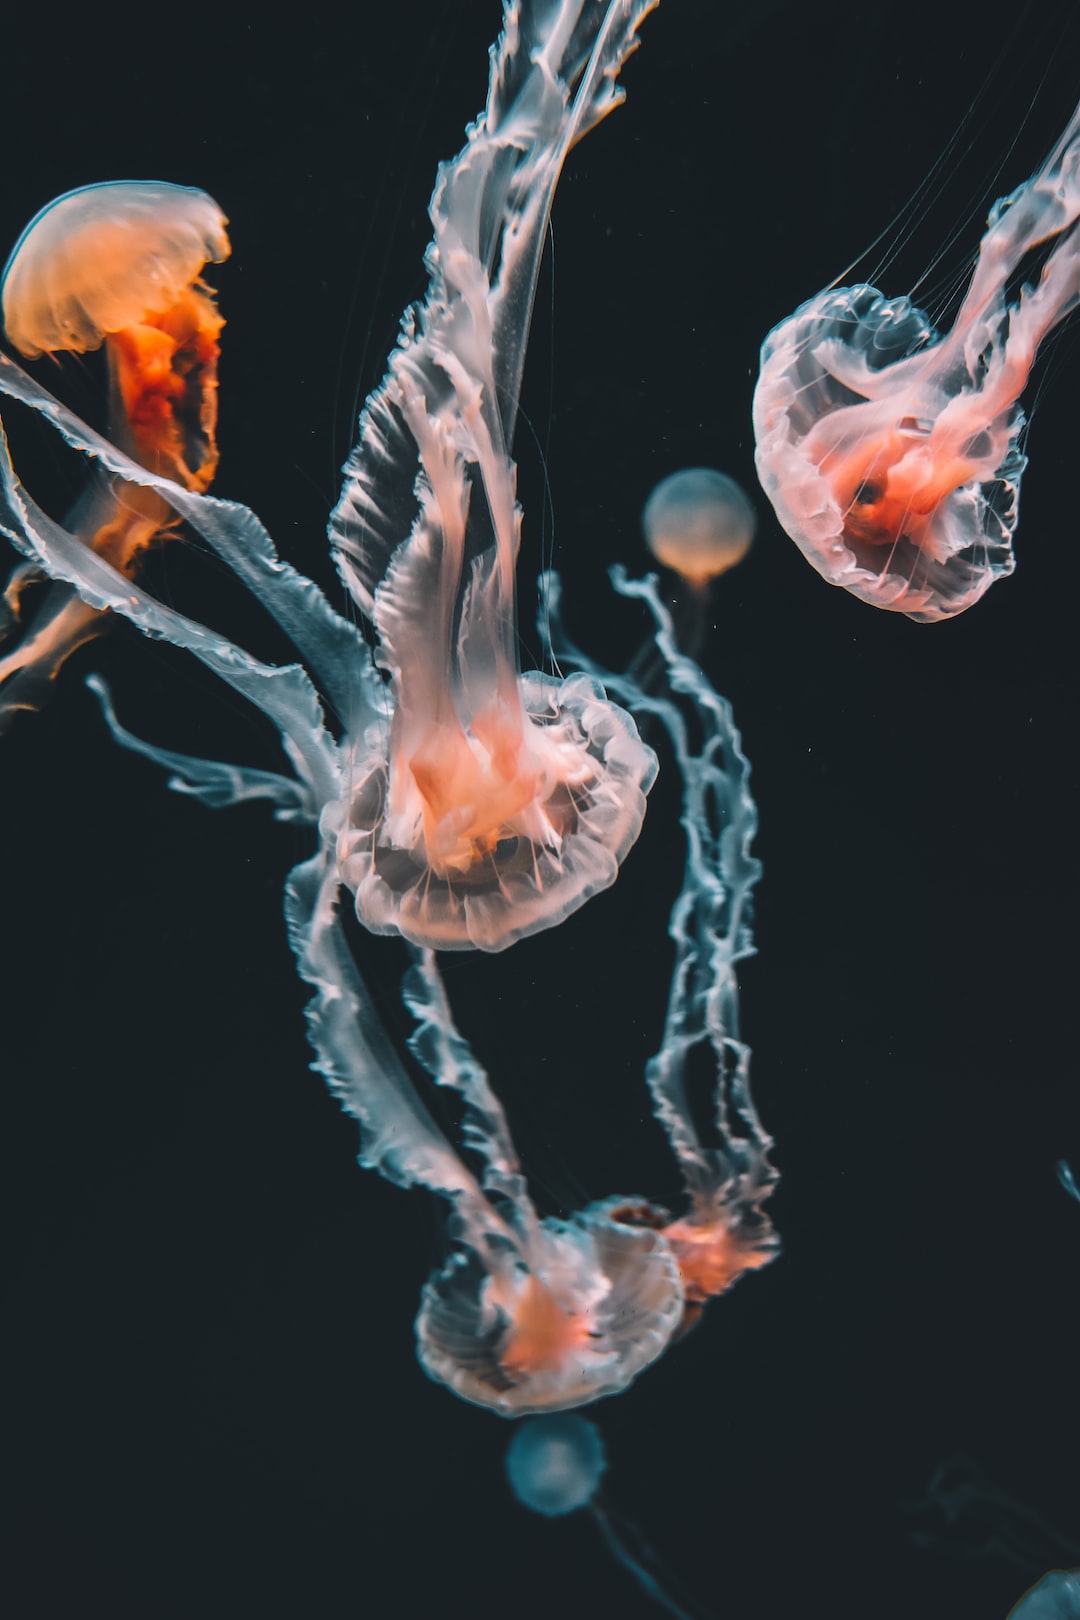 22 wichtige Fragen zu Kann Man Ein Aquarium Überfiltert?